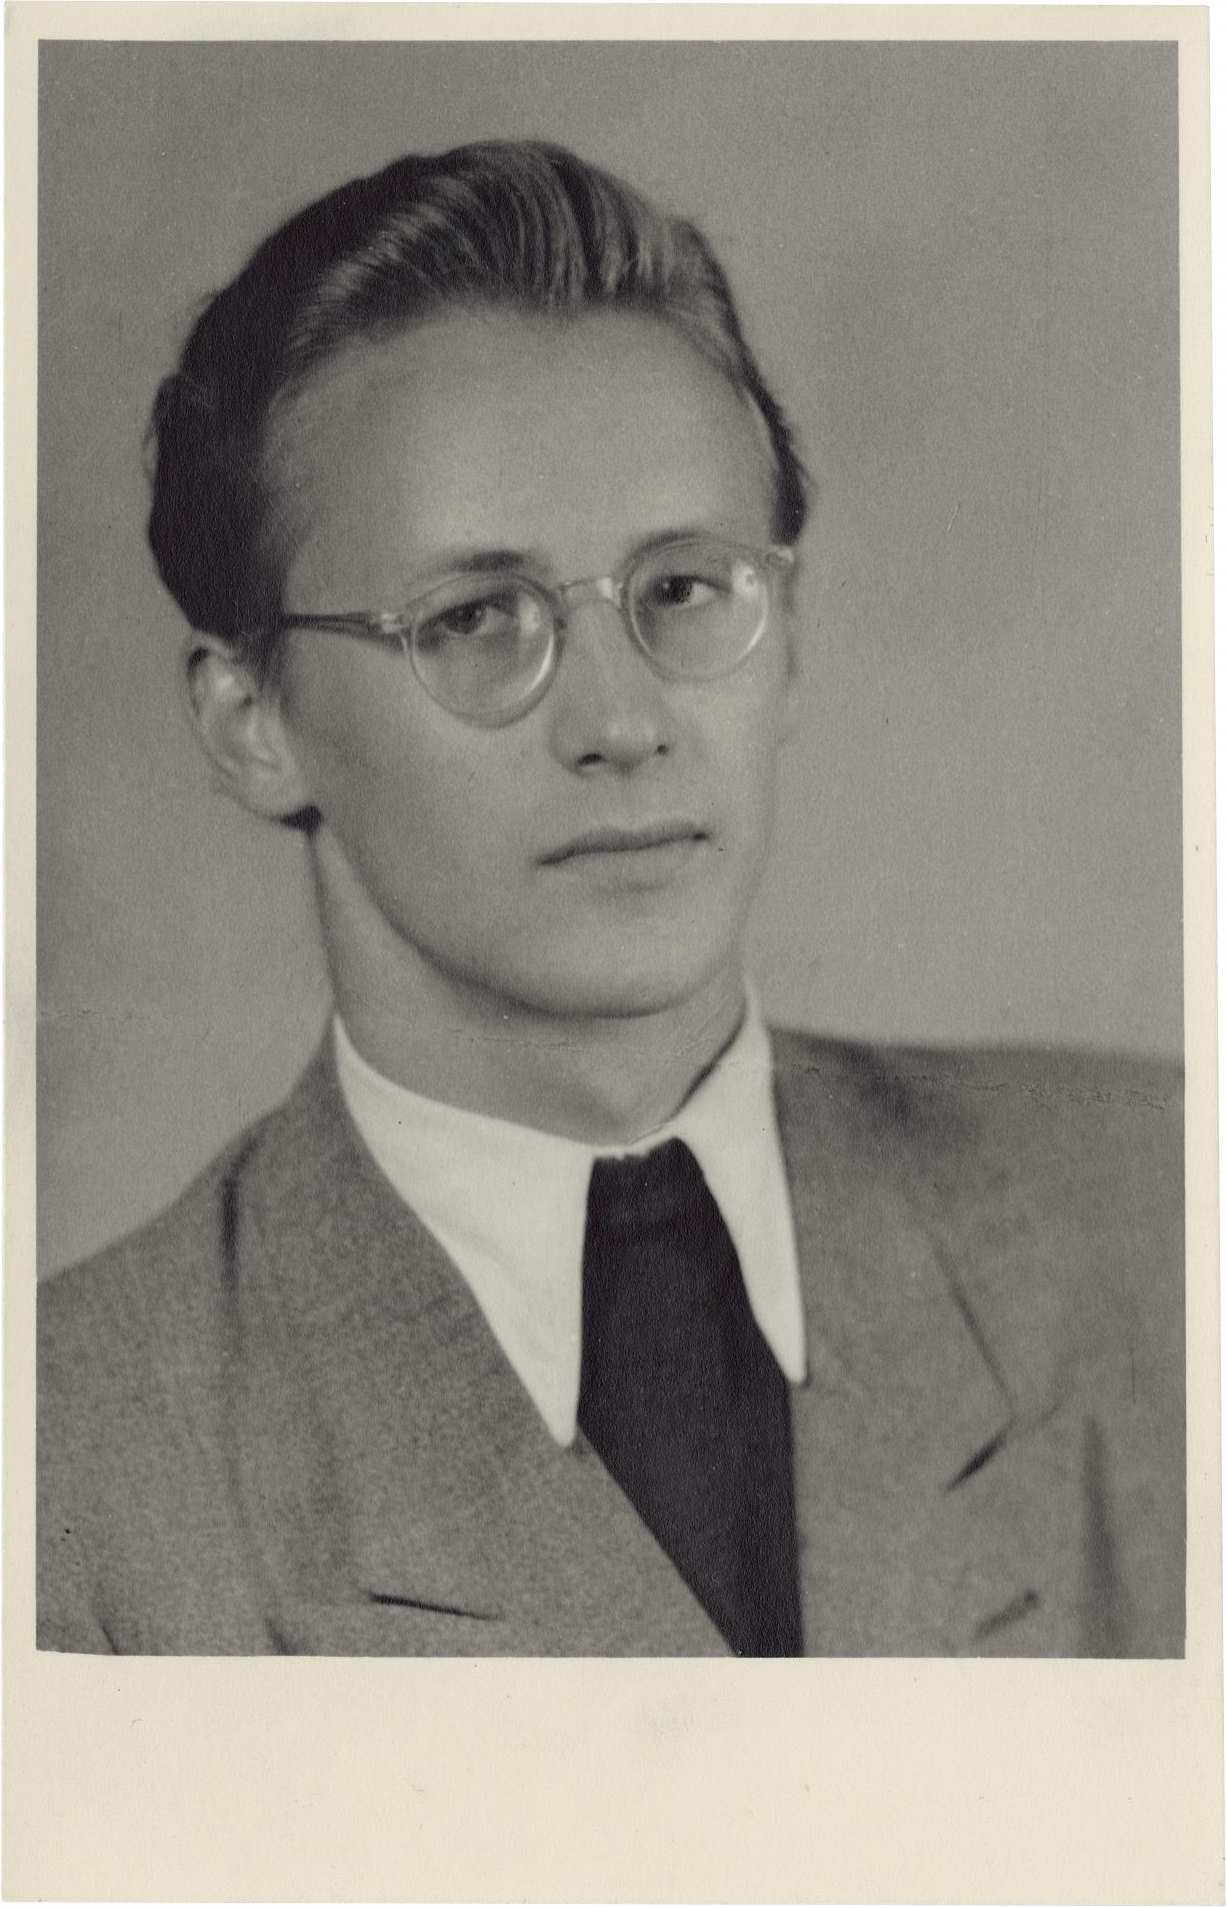 Porträt-Foto von Lutz Rackow, ca. 19 Jahre alt, vor grauem Hintergrund. Er trägt einen Anzug mit Pulli und eine Brille. Die Haare mittellangen Haare sind zurückgekämmt. Er ist leicht seitlich aufgenommen und schaut direkt in die Kamera. 